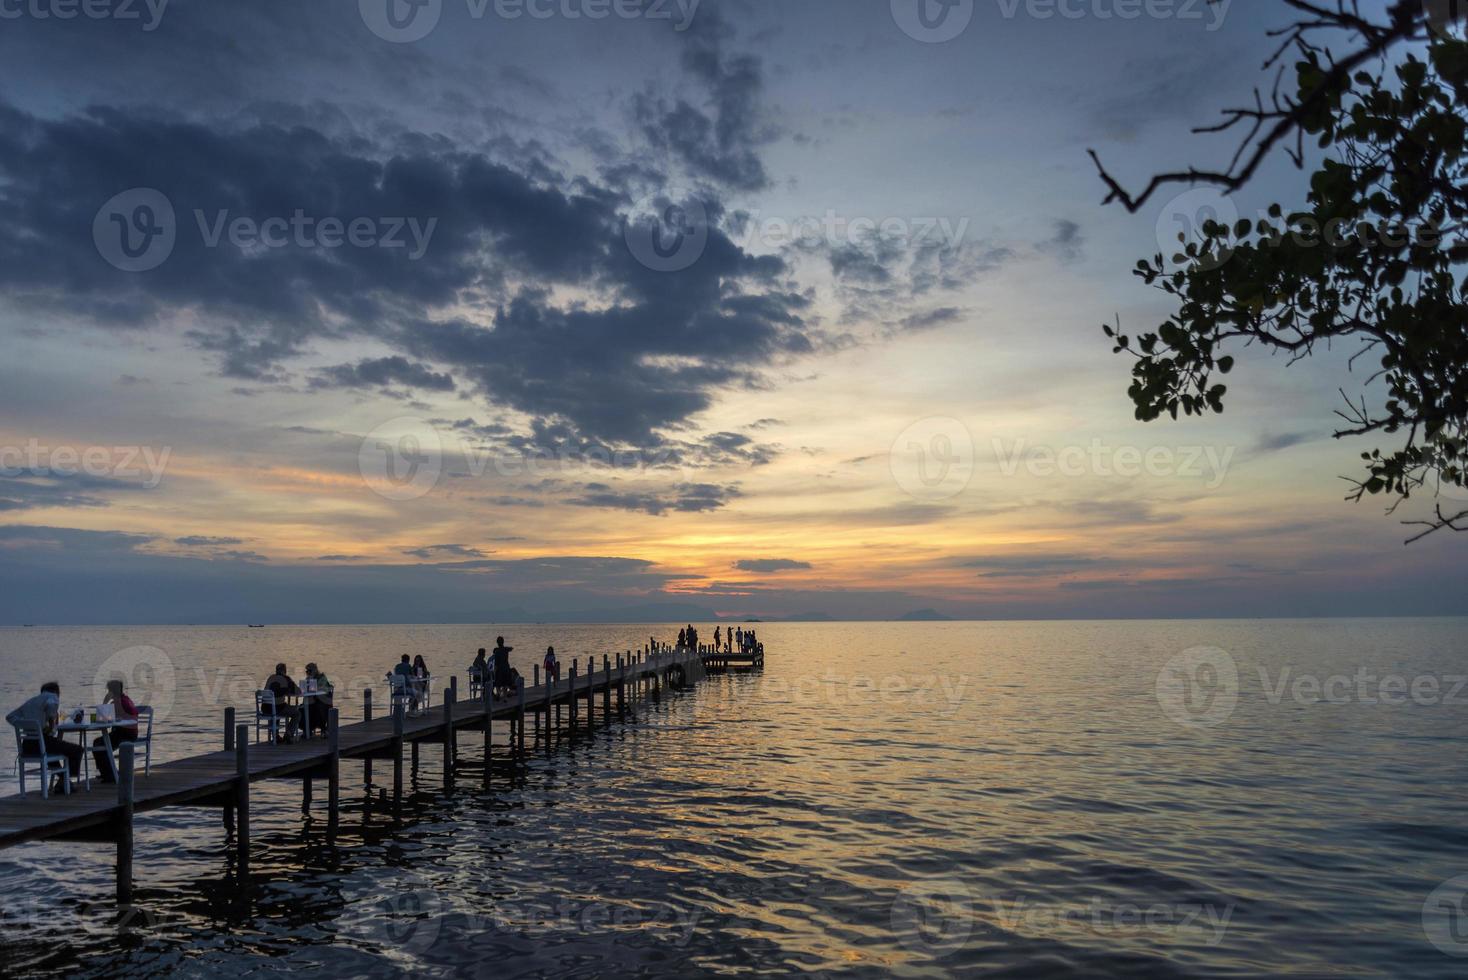 turister ser solnedgången vid piren i Kep Town på Kambodjas kust foto